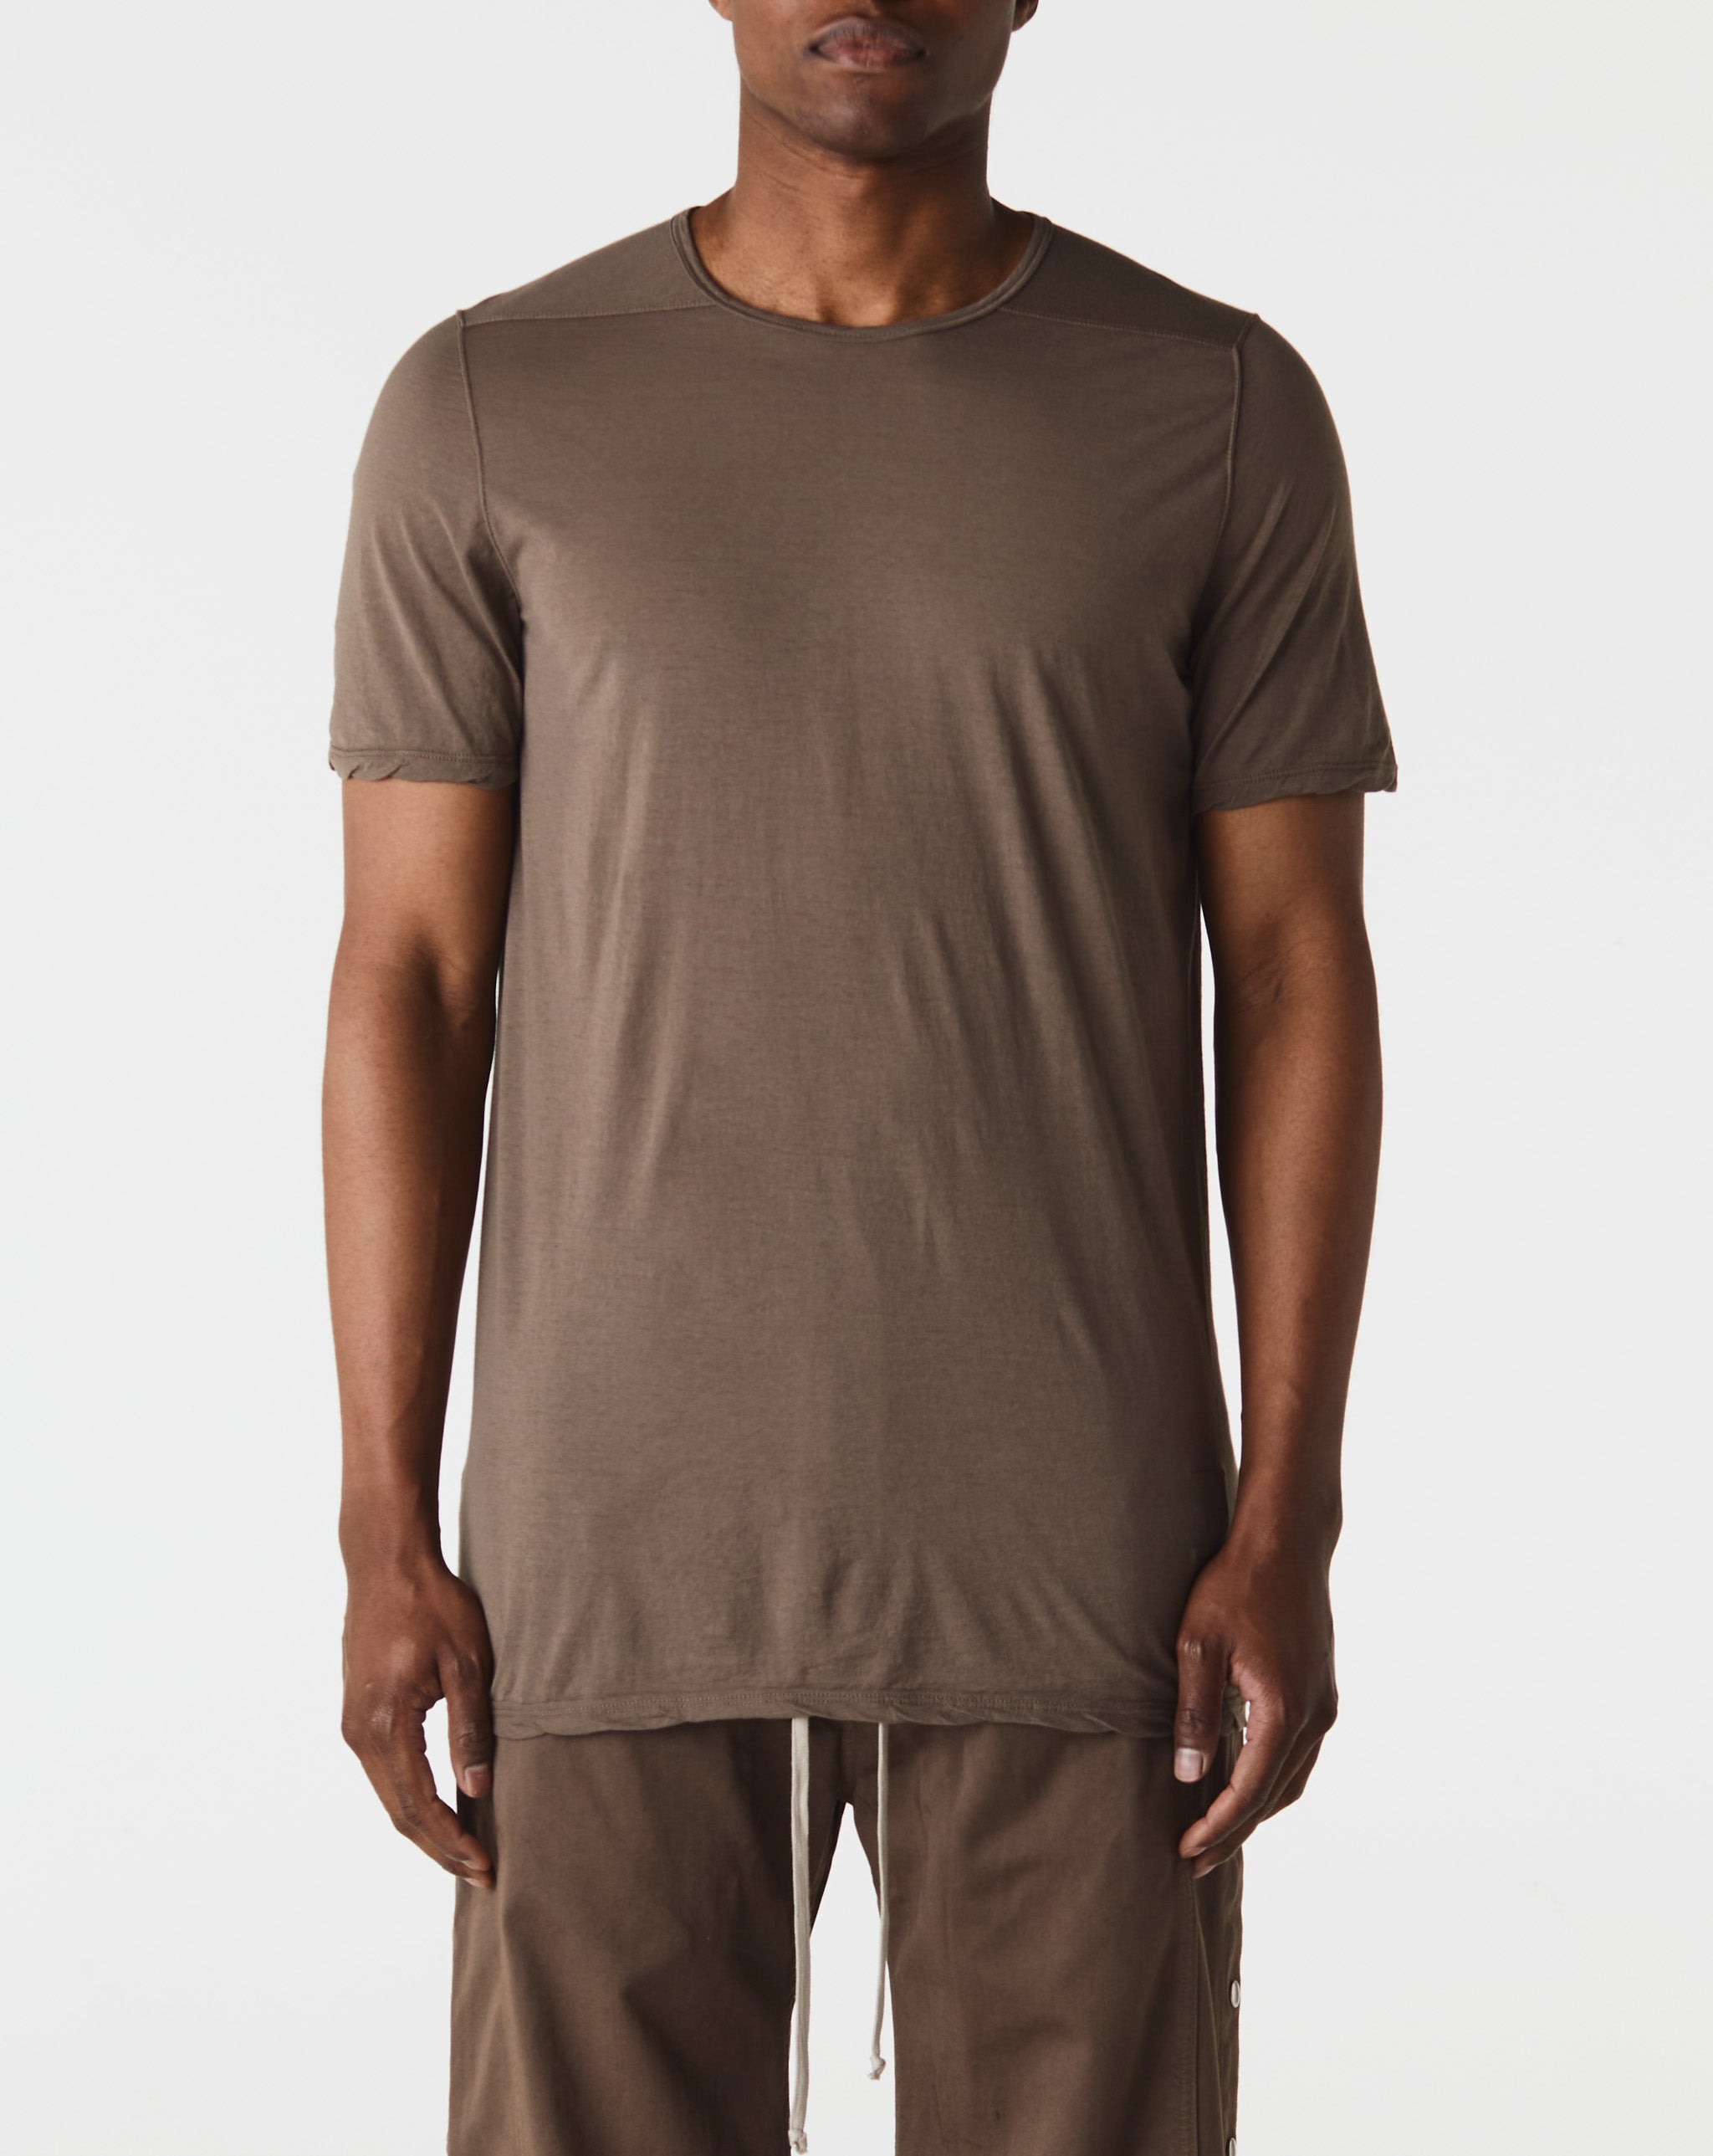 etro floral shirt dress Level T-Shirt  - Cheap Urlfreeze Jordan outlet